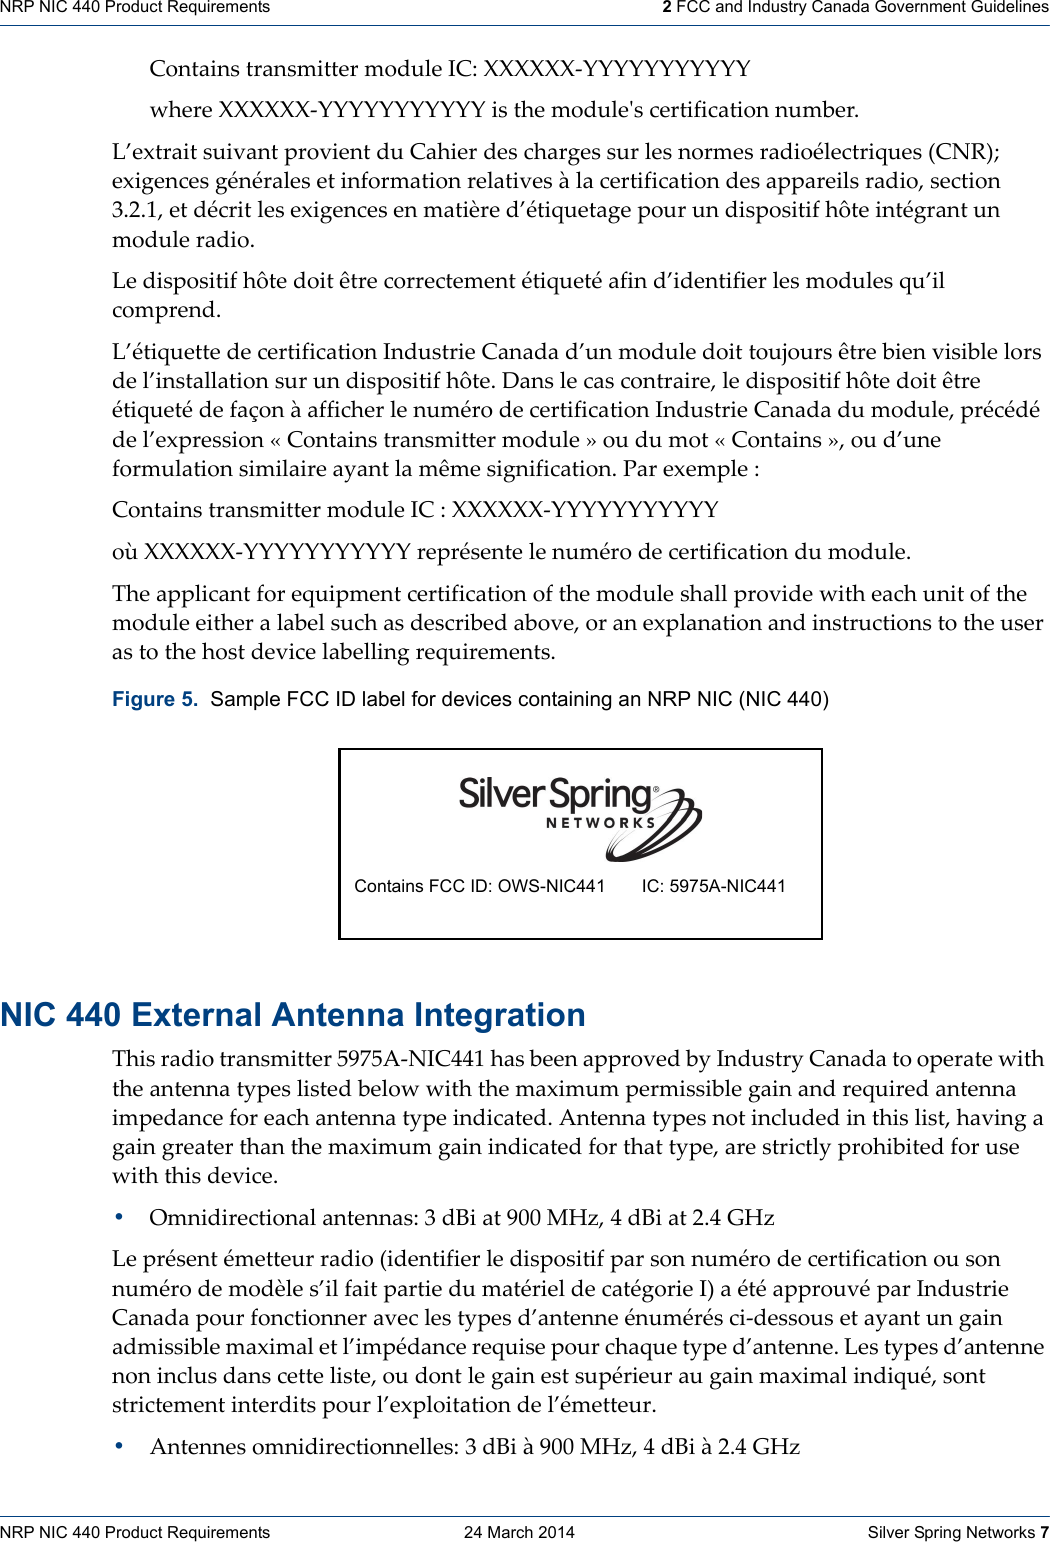 NRP NIC 440 Product Requirements    24 March 2014    Silver Spring Networks 7NRP NIC 440 Product Requirements   2 FCC and Industry Canada Government GuidelinesContainstransmittermoduleIC:XXXXXX‐YYYYYYYYYYYwhereXXXXXX‐YYYYYYYYYYYisthemoduleʹscertificationnumber.L’extraitsuivantprovientduCahierdeschargessurlesnormesradioélectriques(CNR);exigencesgénéralesetinformationrelativesàlacertificationdesappareilsradio,section3.2.1,etdécritlesexigencesenmatièred’étiquetagepourundispositifhôteintégrantunmoduleradio.Ledispositifhôtedoitêtrecorrectementétiquetéafind’identifierlesmodulesqu’ilcomprend.L’étiquettedecertificationIndustrieCanadad’unmoduledoittoujoursêtrebienvisiblelorsdel’installationsurundispositifhôte.Danslecascontraire,ledispositifhôtedoitêtreétiquetédefaçonàafficherlenumérodecertificationIndustrieCanadadumodule,précédédel’expression«Containstransmittermodule»oudumot«Contains»,oud’uneformulationsimilaireayantlamêmesignification.Parexemple:ContainstransmittermoduleIC:XXXXXX‐YYYYYYYYYYYoùXXXXXX‐YYYYYYYYYYYreprésentelenumérodecertificationdumodule.Theapplicantforequipmentcertificationofthemoduleshallprovidewitheachunitofthemoduleeitheralabelsuchasdescribedabove,oranexplanationandinstructionstotheuserastothehostdevicelabellingrequirements.NIC 440 External Antenna IntegrationThisradiotransmitter5975A‐NIC441hasbeenapprovedbyIndustryCanadatooperatewiththeantennatypeslistedbelowwiththemaximumpermissiblegainandrequiredantennaimpedanceforeachantennatypeindicated.Antennatypesnotincludedinthislist,havingagaingreaterthanthemaximumgainindicatedforthattype,arestrictlyprohibitedforusewiththisdevice.•Omnidirectionalantennas:3dBiat900MHz,4dBiat2.4GHzLeprésentémetteurradio(identifierledispositifparsonnumérodecertificationousonnumérodemodèles’ilfaitpartiedumatérieldecatégorieI)aétéapprouvéparIndustrieCanadapourfonctionneraveclestypesd’antenneénumérésci‐dessousetayantungainadmissiblemaximaletl’impédancerequisepourchaquetyped’antenne.Lestypesd’antennenoninclusdanscetteliste,oudontlegainestsupérieuraugainmaximalindiqué,sontstrictementinterditspourl’exploitationdel’émetteur.•Antennesomnidirectionnelles:3dBià900MHz,4dBià2.4GHzFigure 5.  Sample FCC ID label for devices containing an NRP NIC (NIC 440) Contains FCC ID: OWS-NIC441 IC: 5975A-NIC441